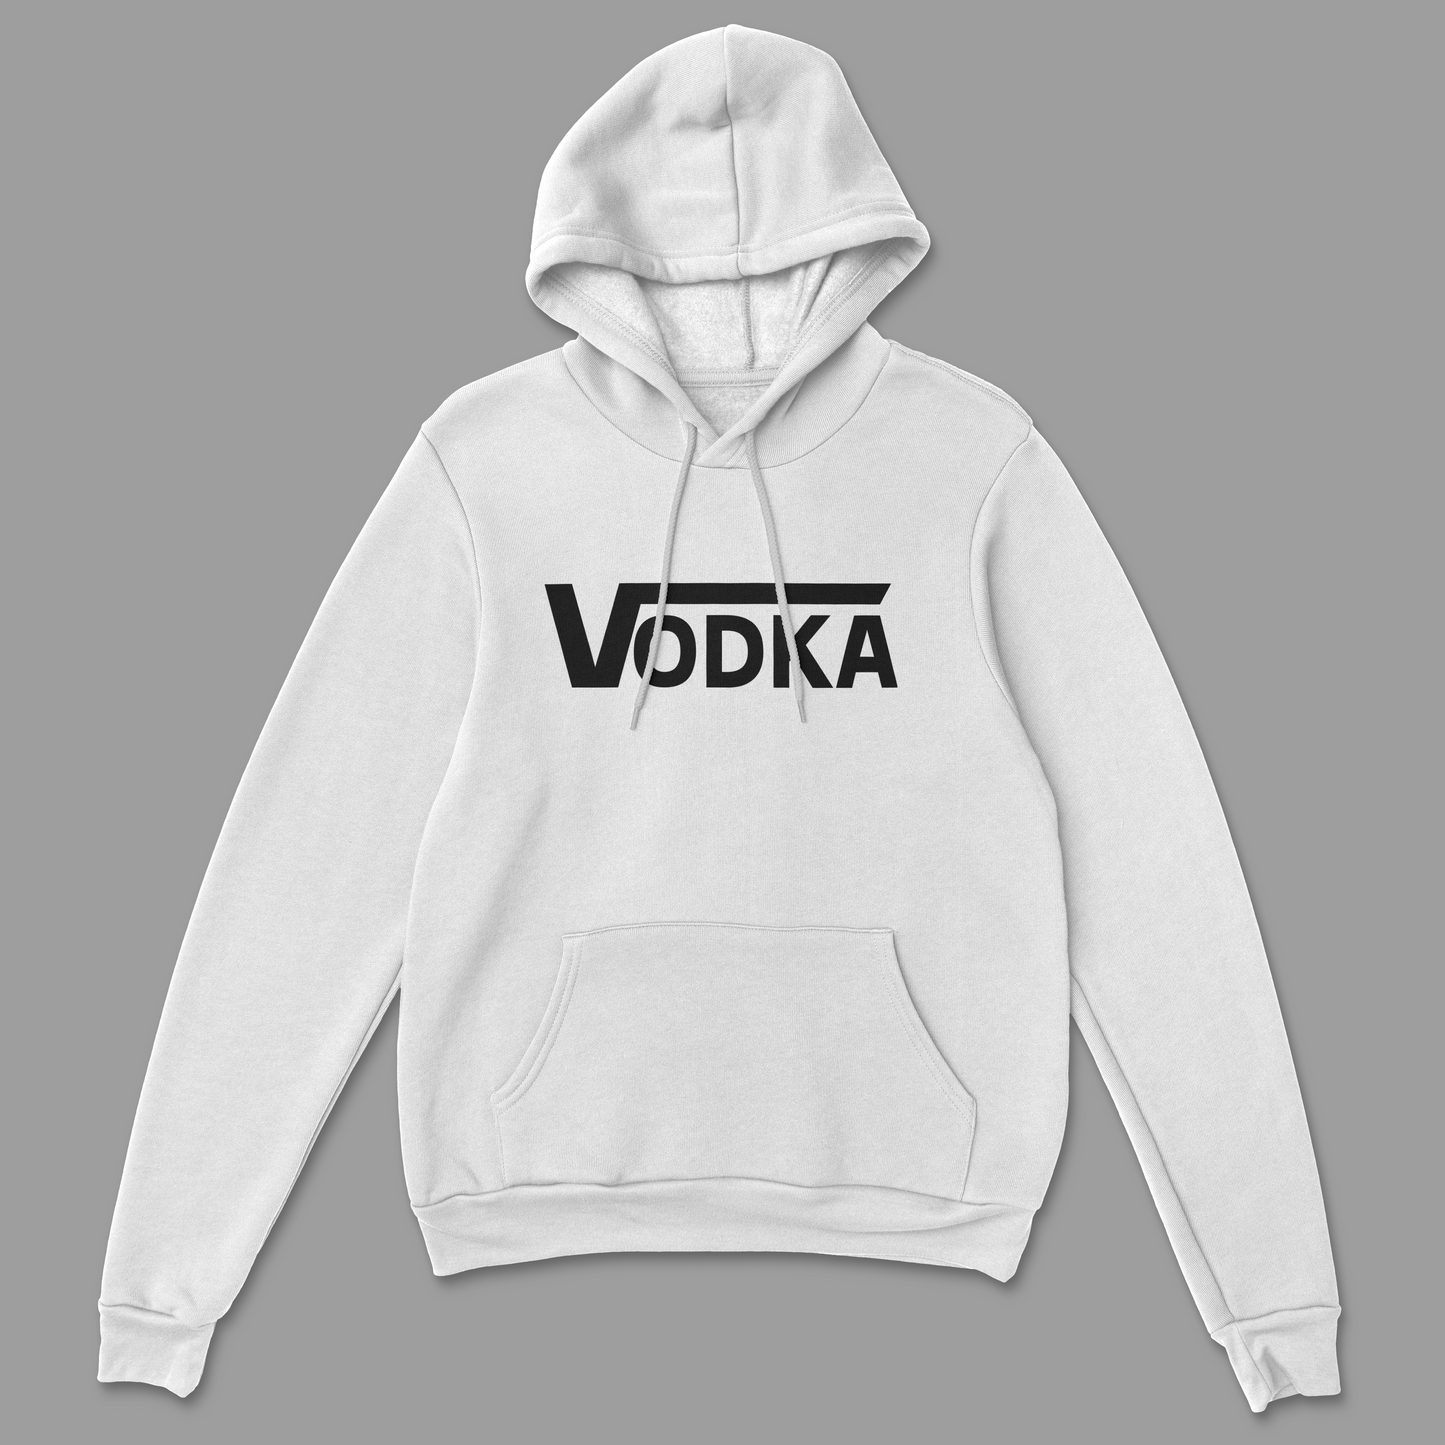 Vodka Hoodie